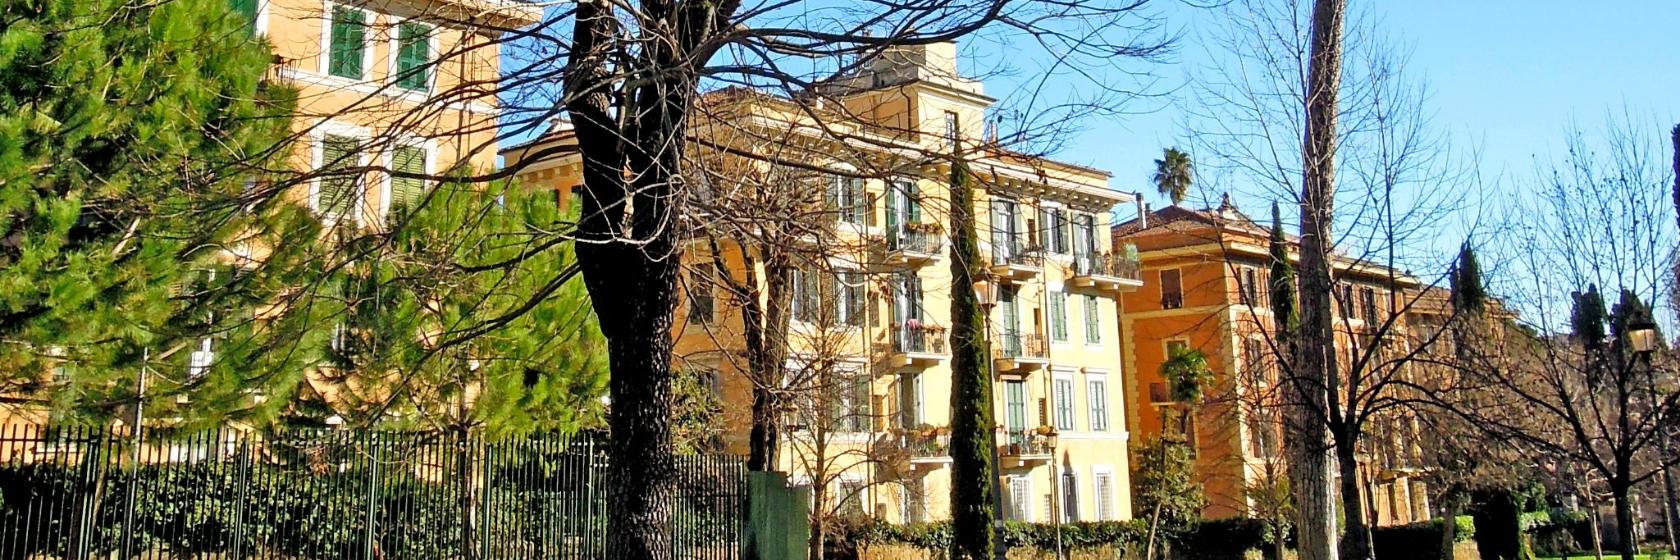 The 10 best hotels near Via Nomentana in Rome, Italy